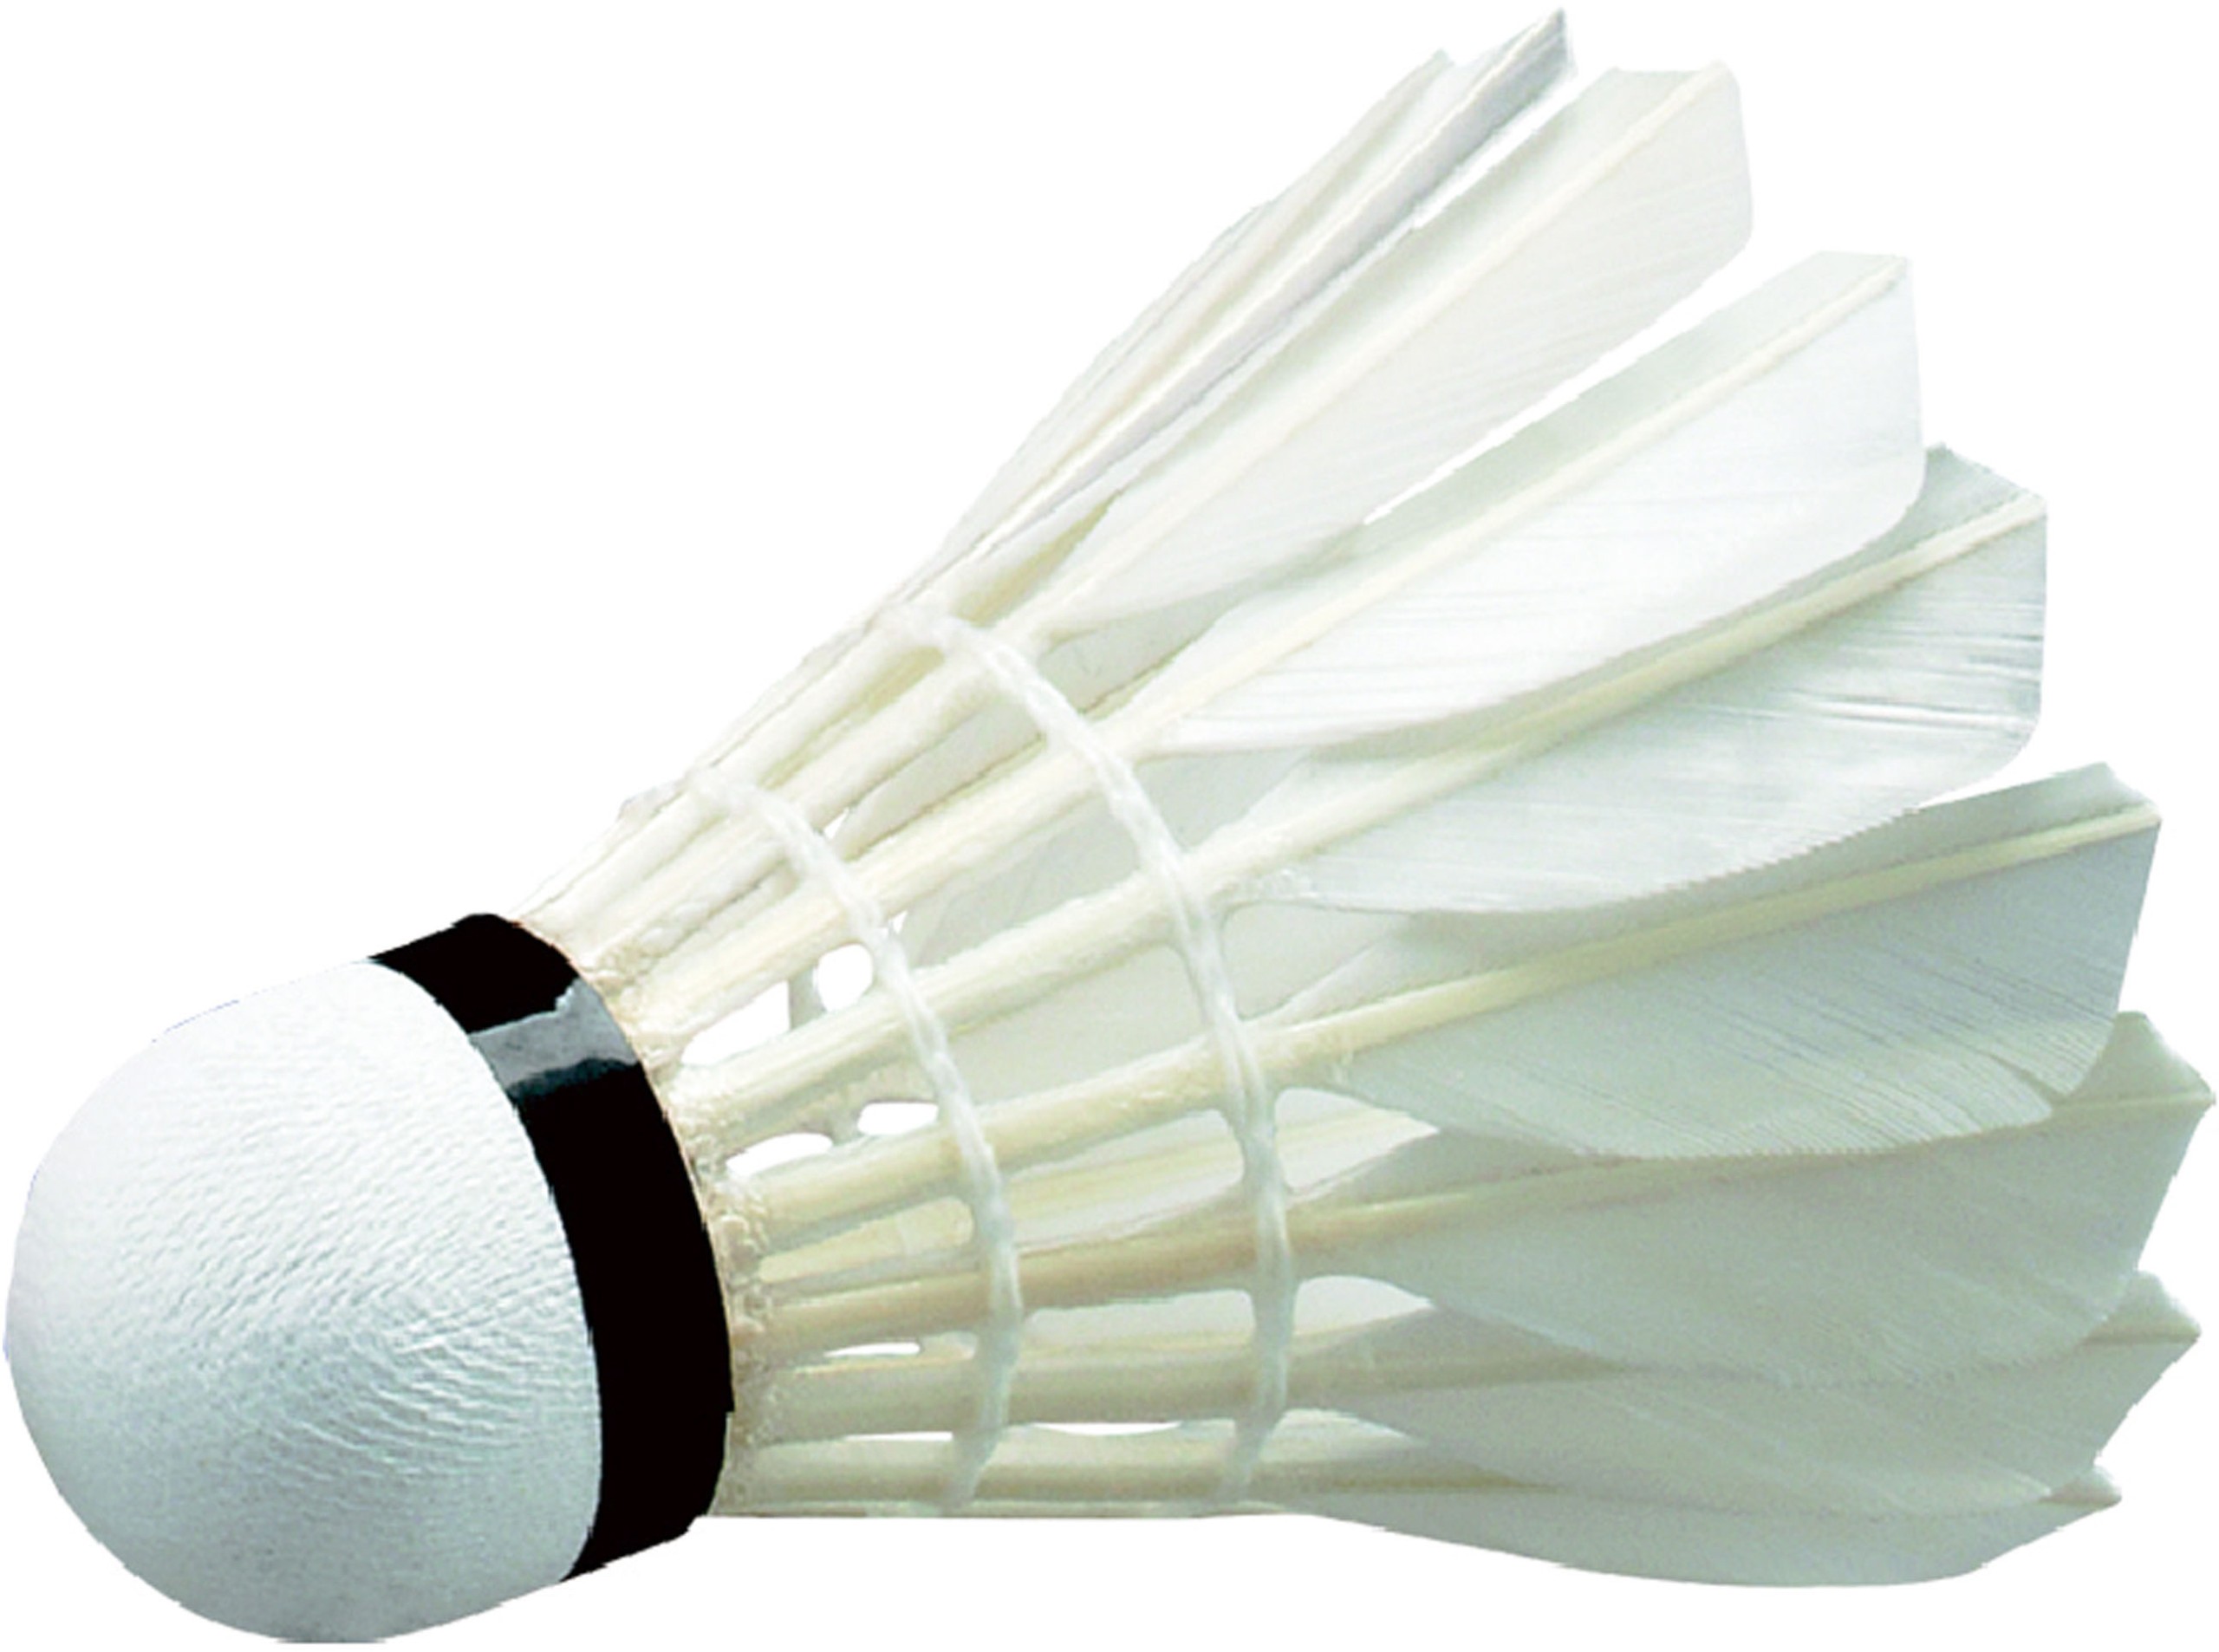 Μπαλάκια Badminton ΕΠΙΠΕΔΟΥ ΑΓΩΝΩΝ Wish (12 τμχ)